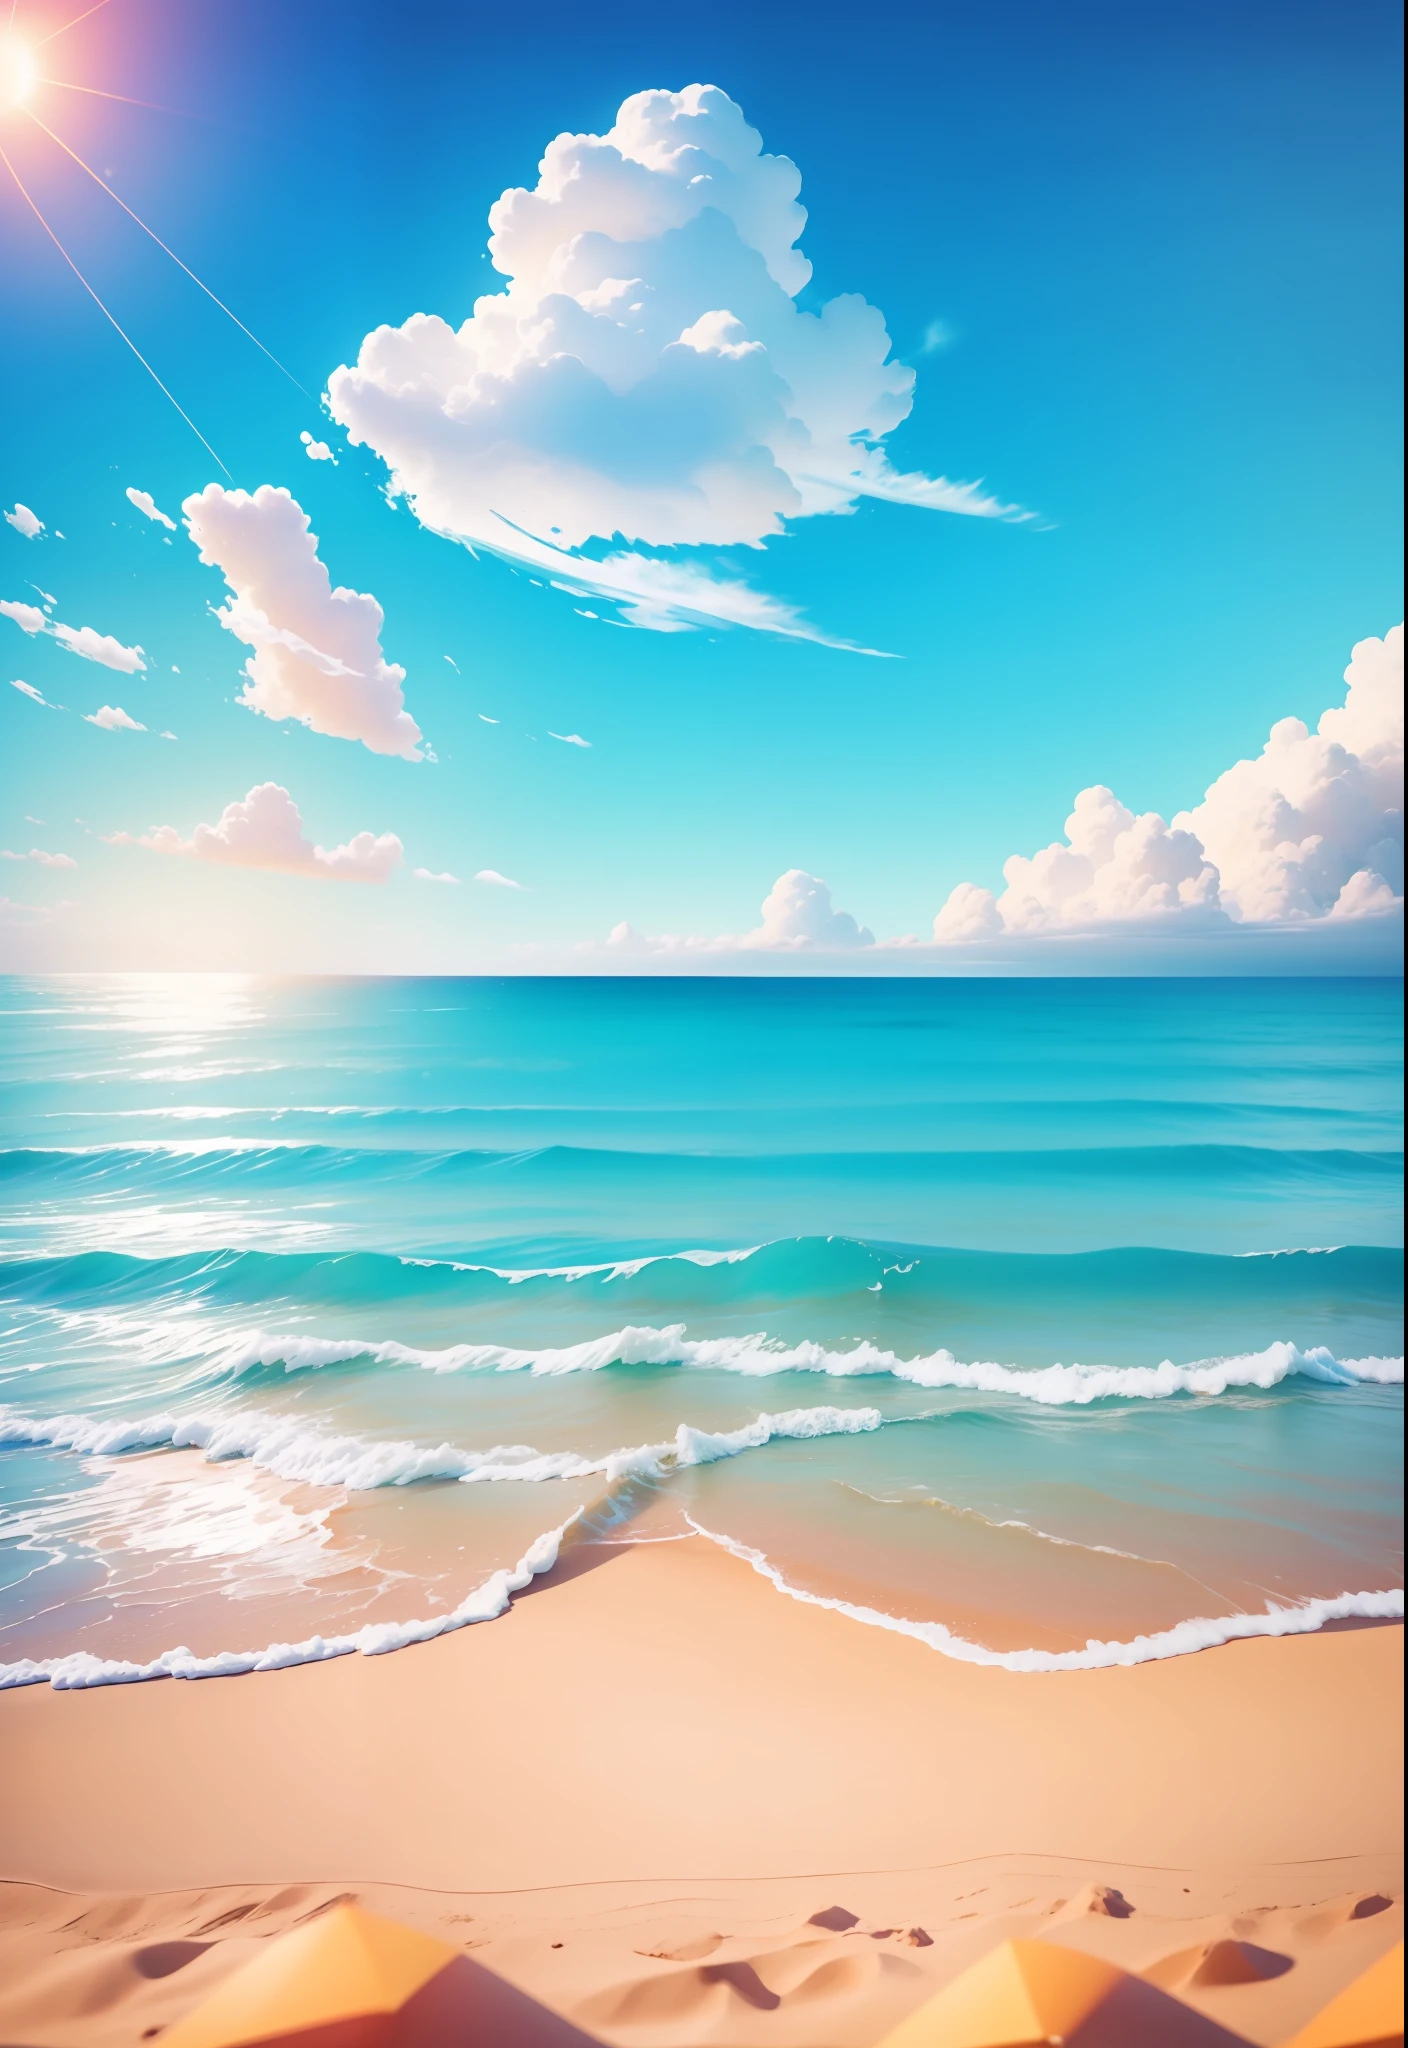 여름 바닷가, 해변, 화창한 weather, 맑은 하늘, 화창한, 화려한, 즐겁고 행복한 여름방학, 간단한 그림, 확대, 눈부신 햇살, 먼 파도, 시각적 영향, 3D 드림웍스 스타일, 관점은 정사각형이다